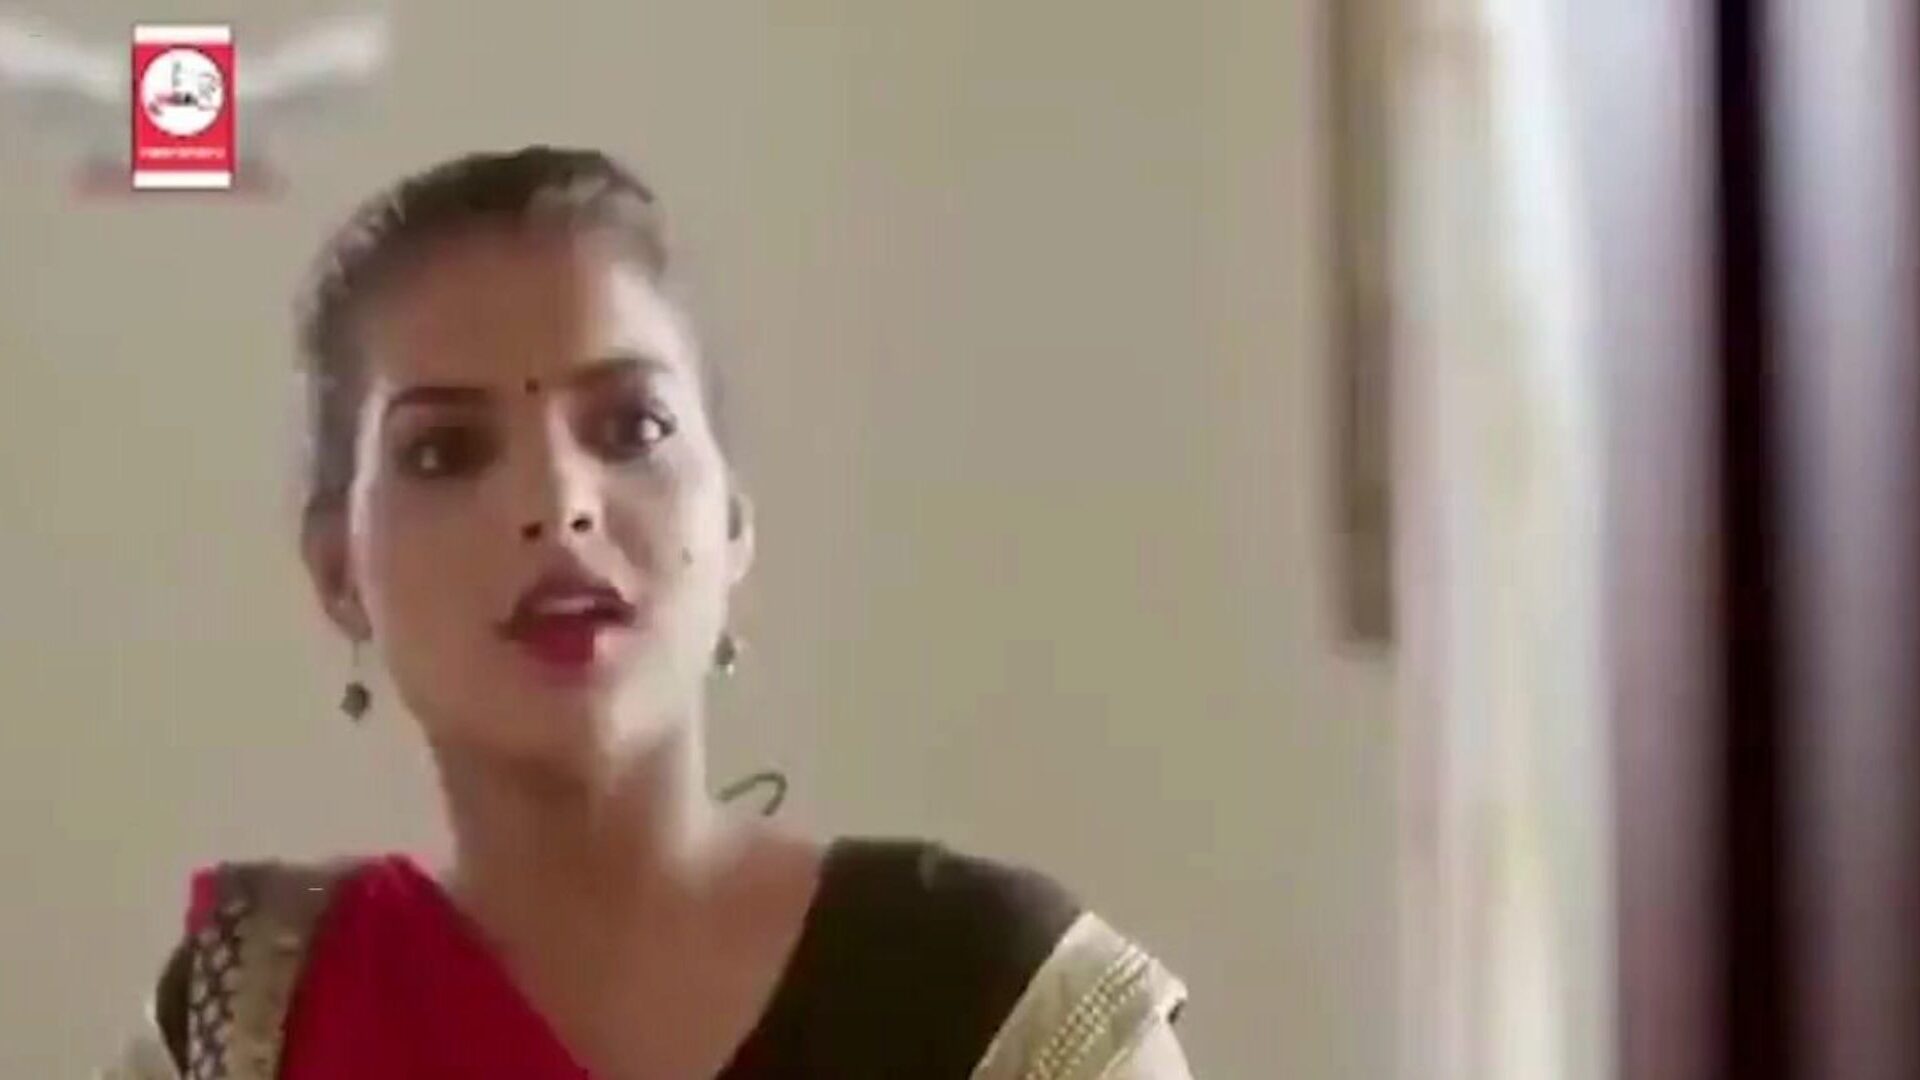 νέα και τελευταία hot indian web σειρά 2020, πορνό 2a: xhamster παρακολουθήστε νέα και τελευταία hot indian web σειρά 2020 σκηνή ταινίας στο xhamster, η τεράστια ιστοσελίδα hd fucky-fucky tube με τόνους δωρεάν ντους σκληρού μήκους και κόκκινες ταινίες καυτού πορνό